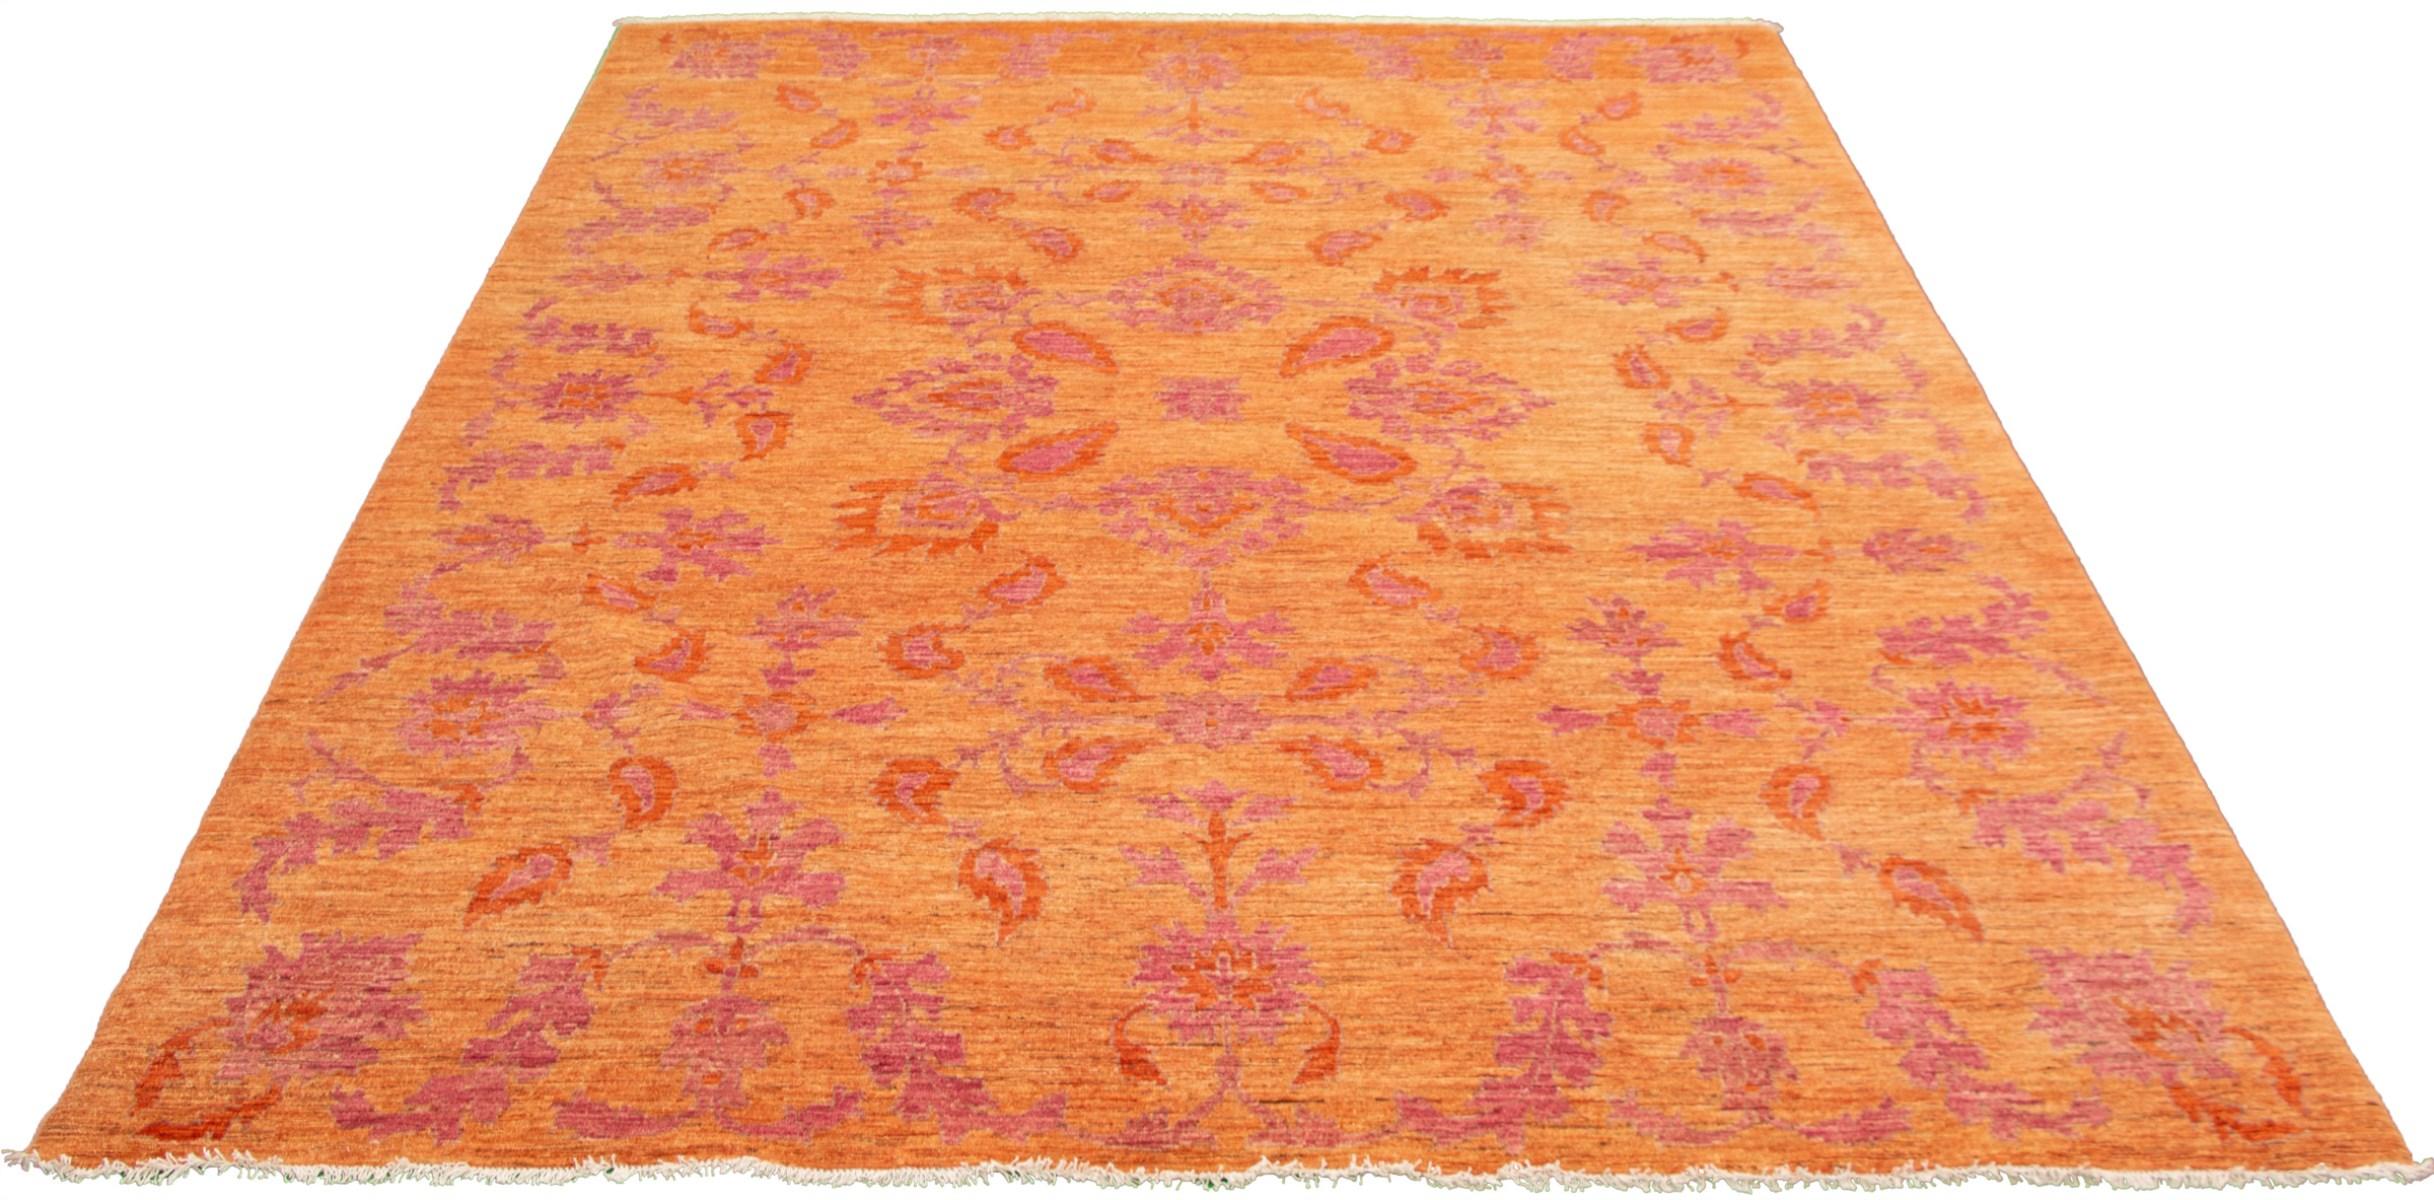 Vegetable Dyed Fine Persian Oushak Rug, Pink & Orange, Transitional Floral Design - 10'x14'